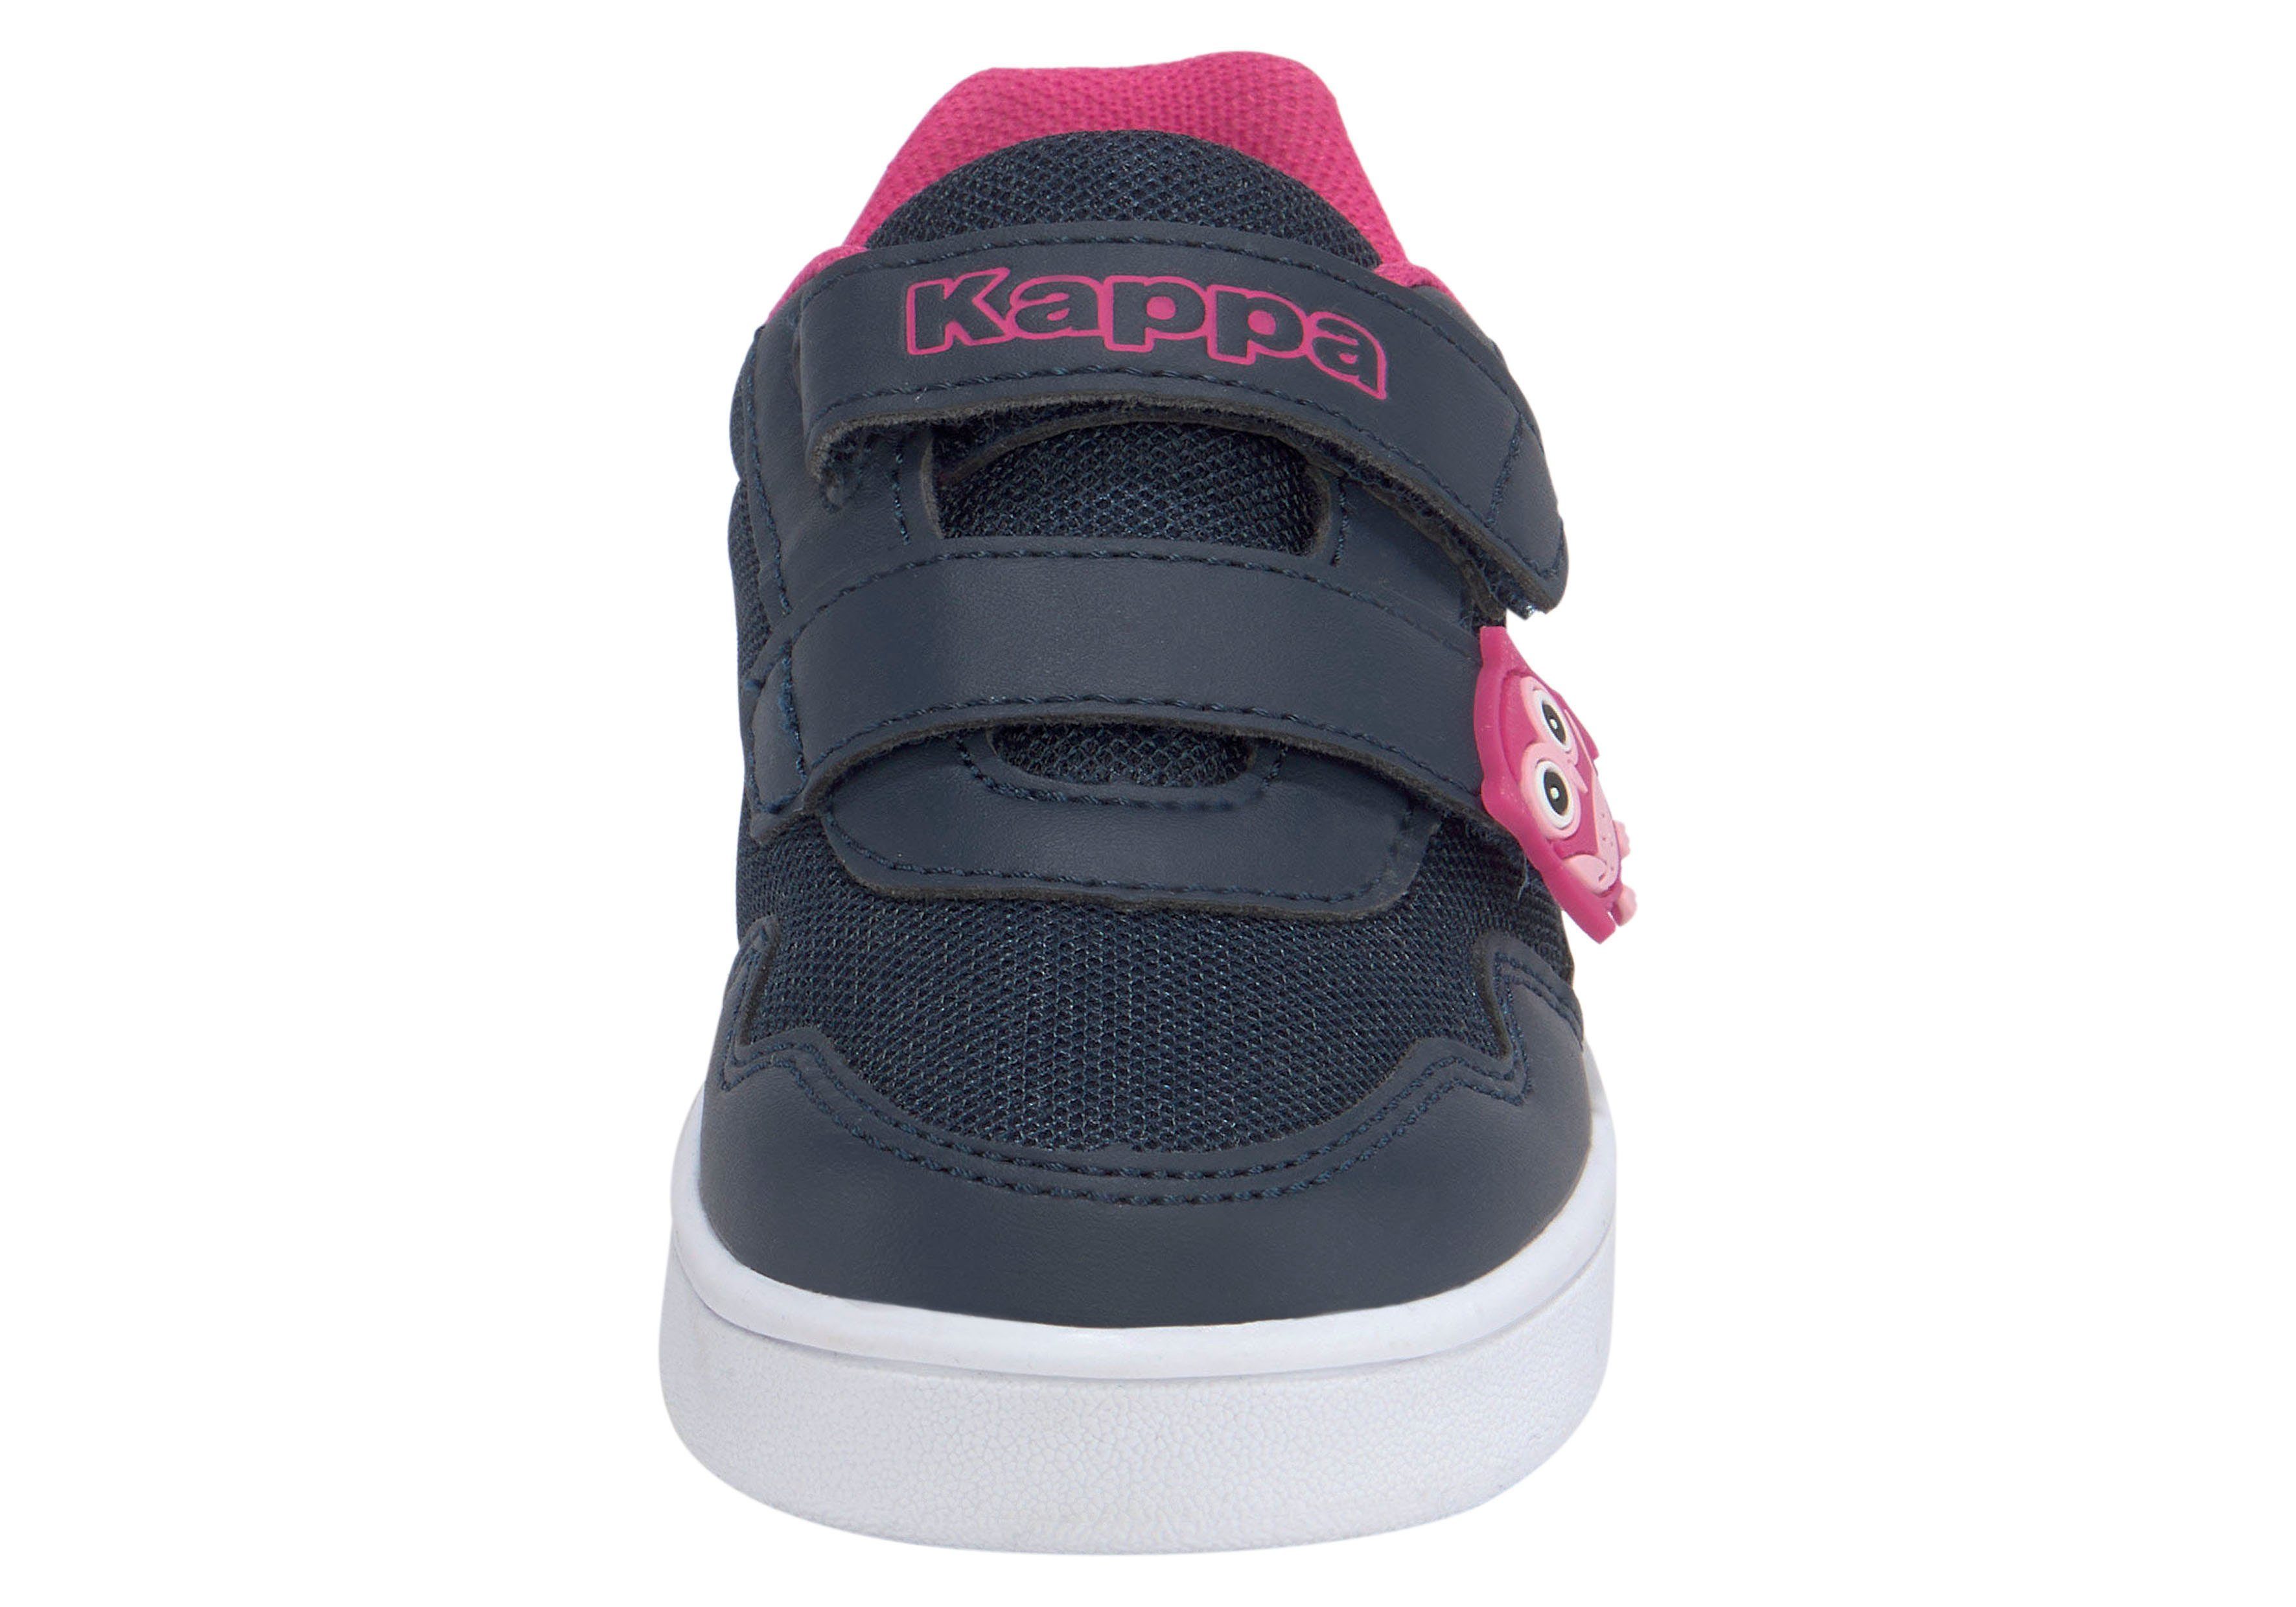 mit Kappa navy-pink Sneaker Klettverschluss